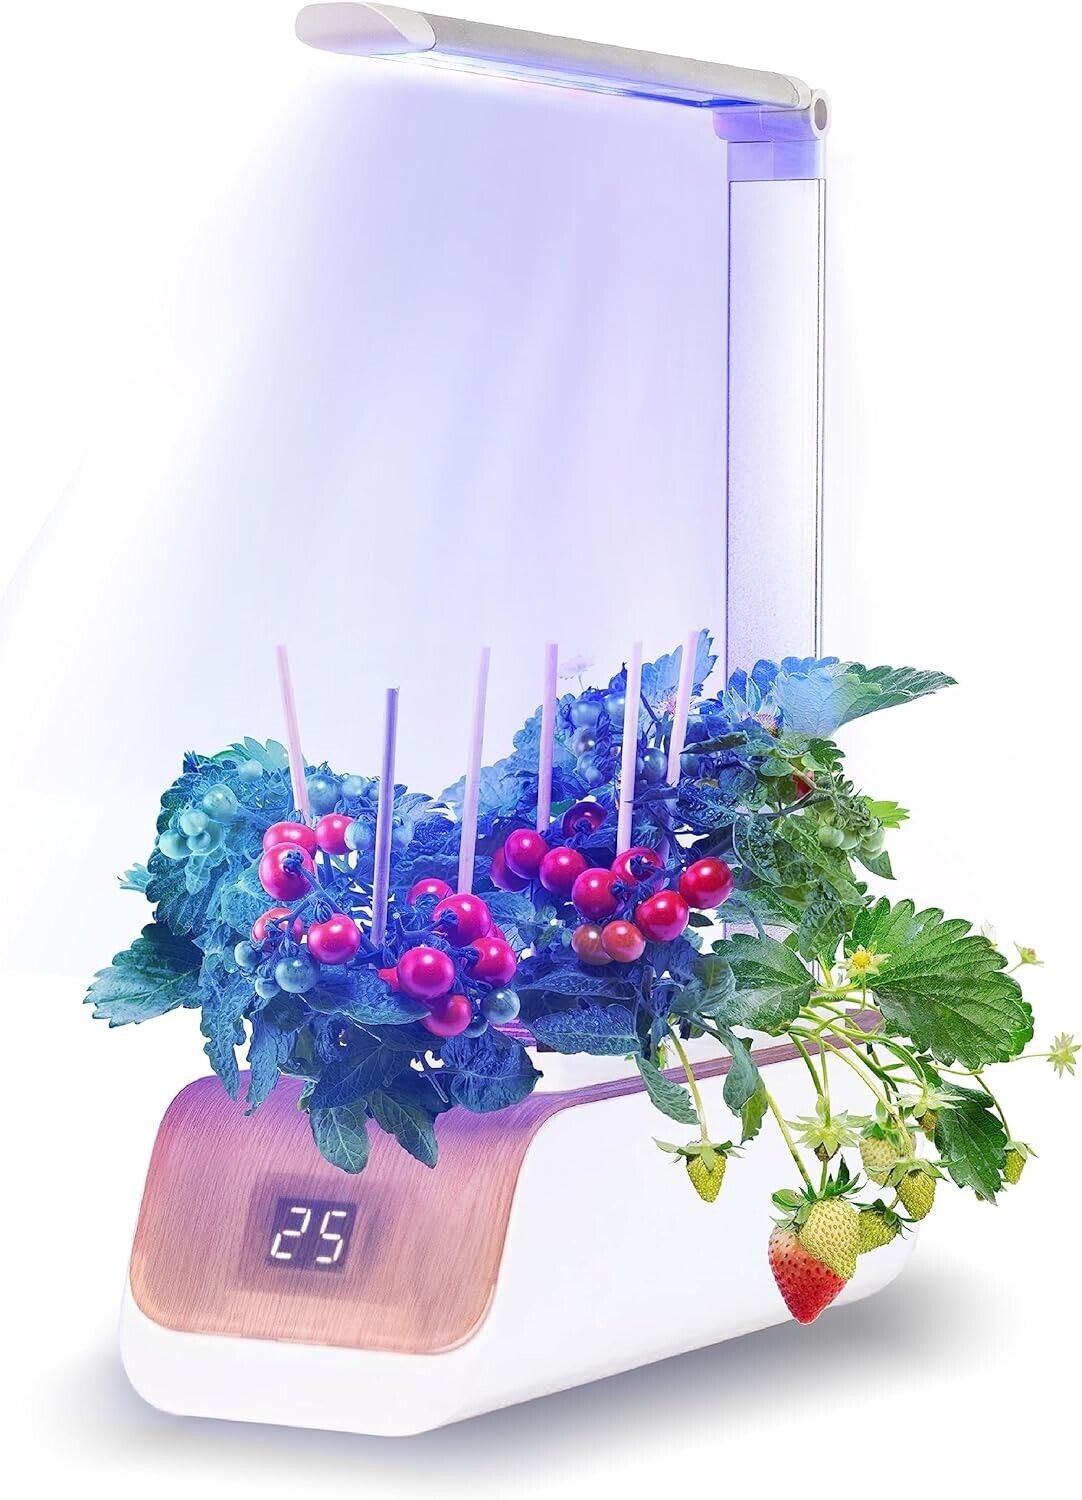 Hydroponics Growing System, Indoor Herb Garden with Grow Light Smart Garden